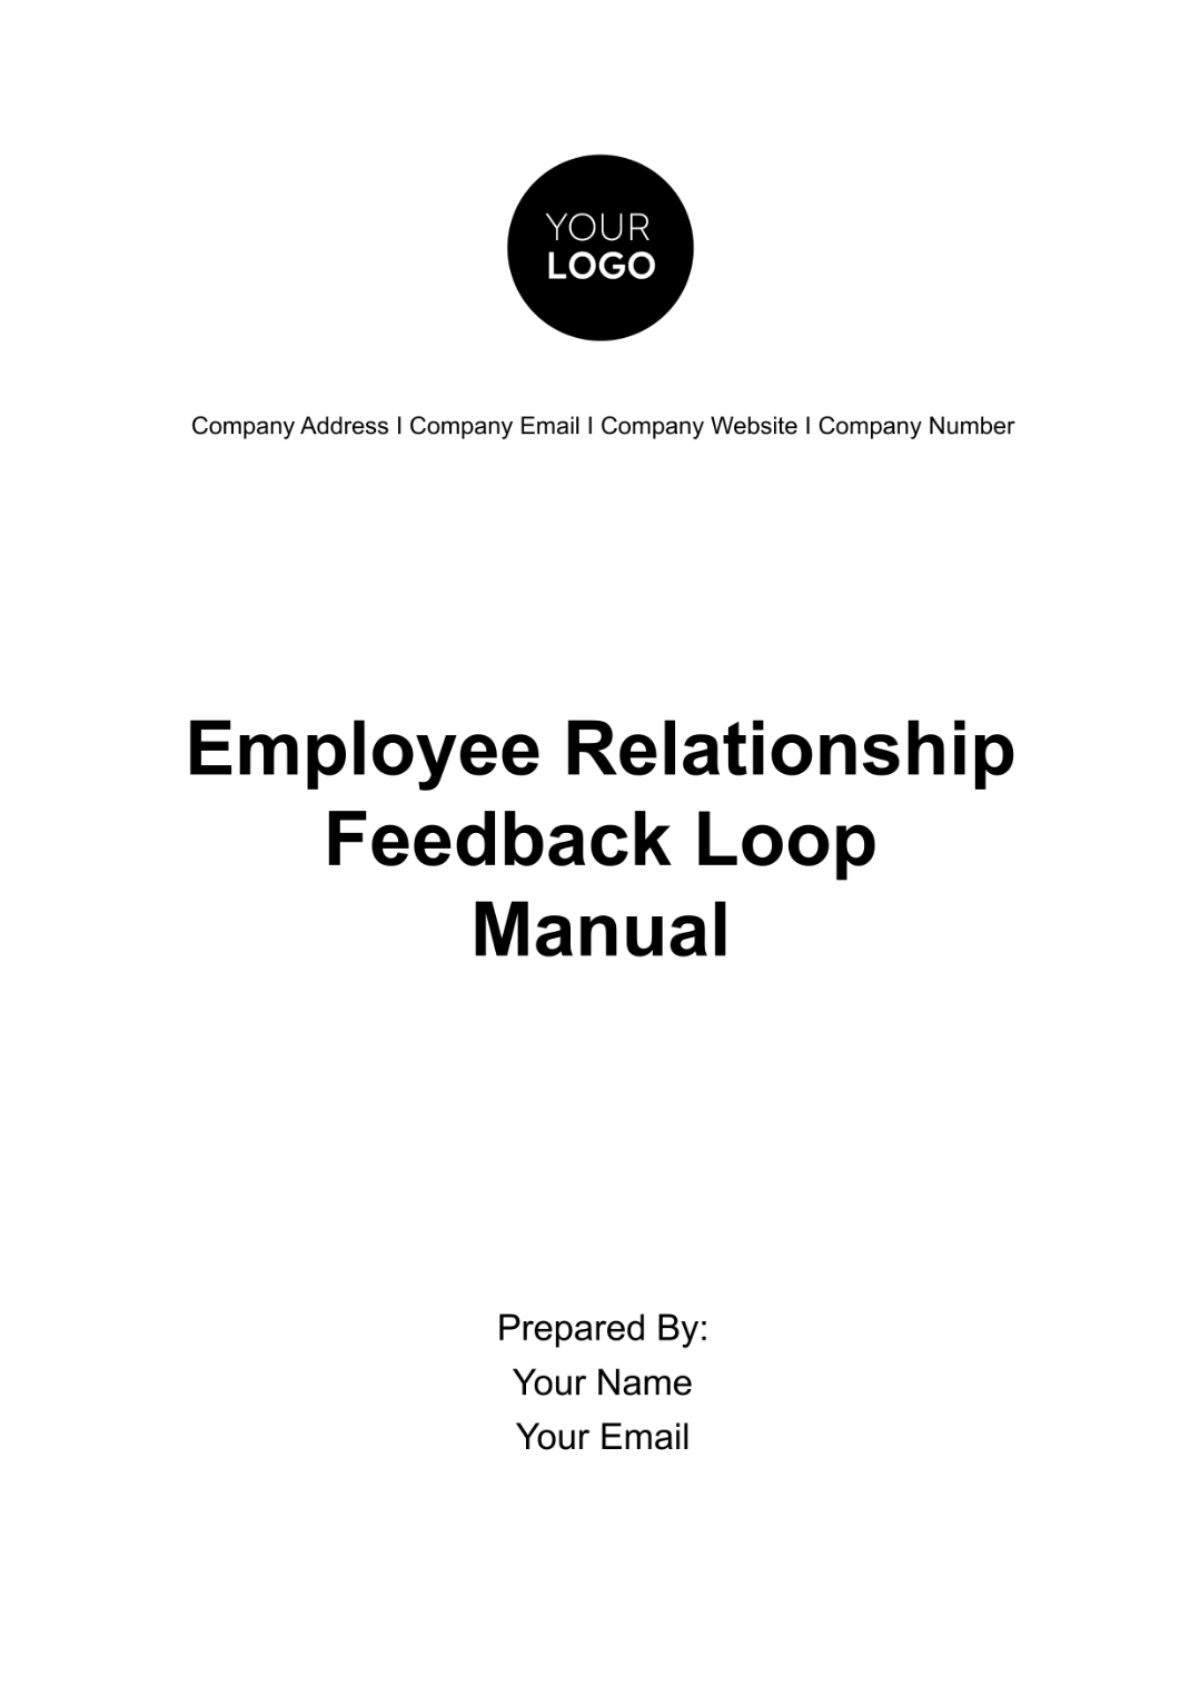 Employee Relationship Feedback Loop Manual HR Template